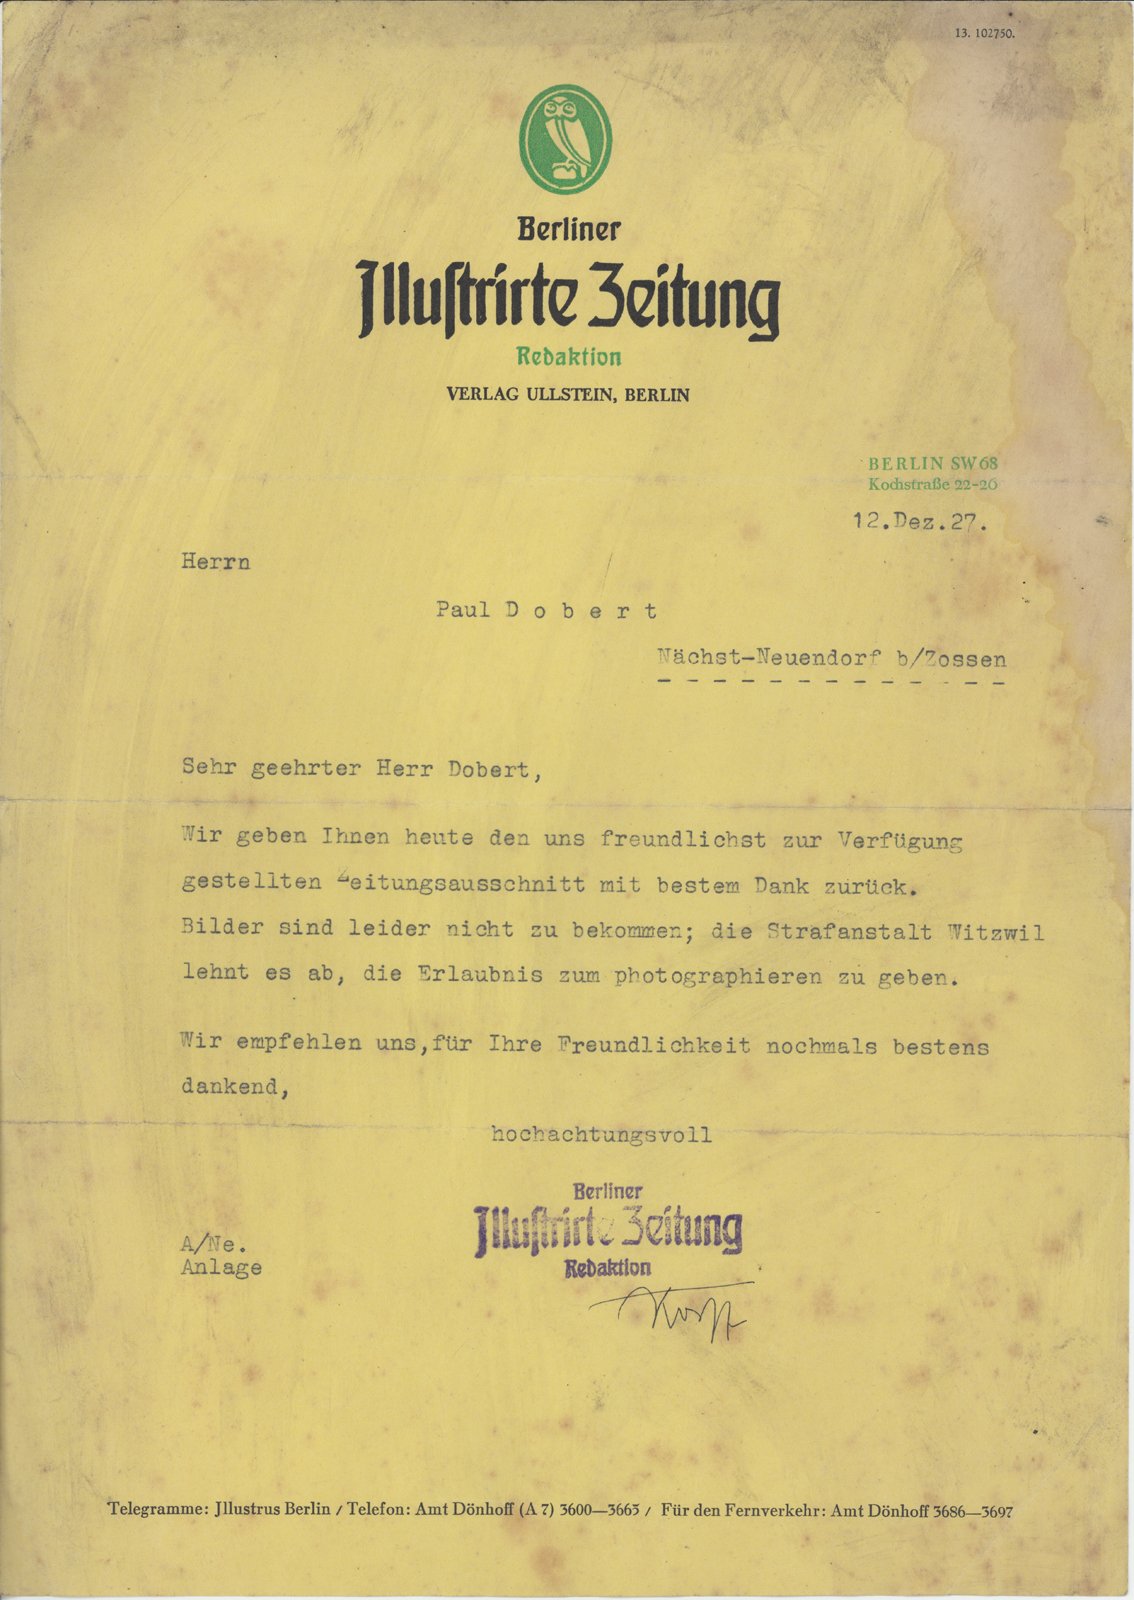 Illustrirte Zeitung an Dobert, 12.12.1927 (Heimatverein "Alter Krug" Zossen e.V. CC BY-NC-SA)